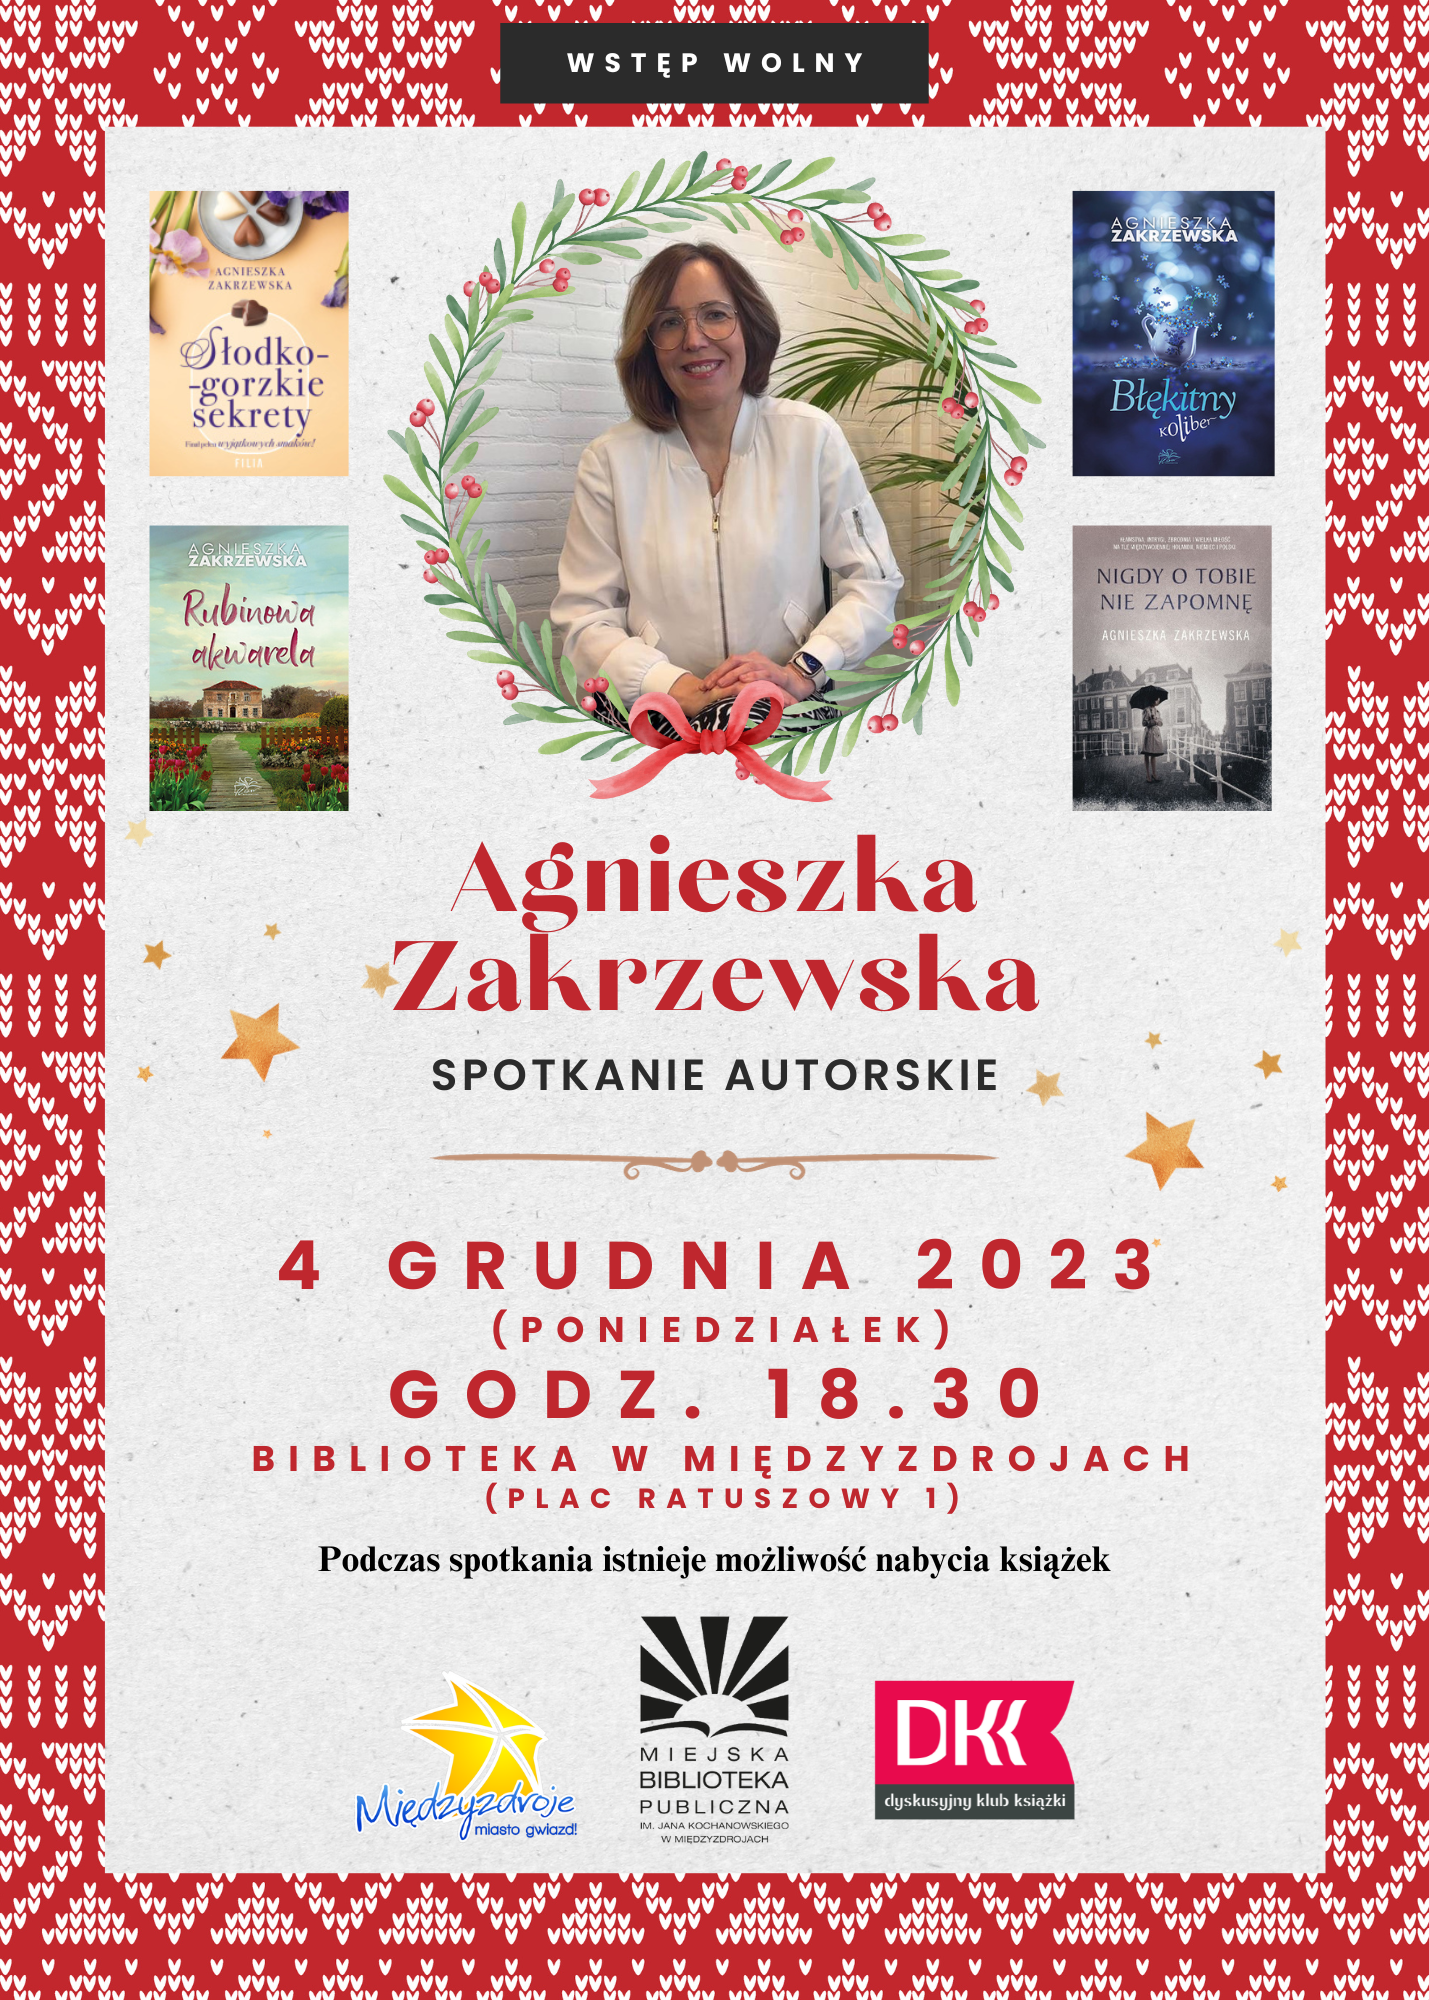 Spotkanie autorskie z Agnieszką Zakrzewską - 4 grudnia 2023 r. 